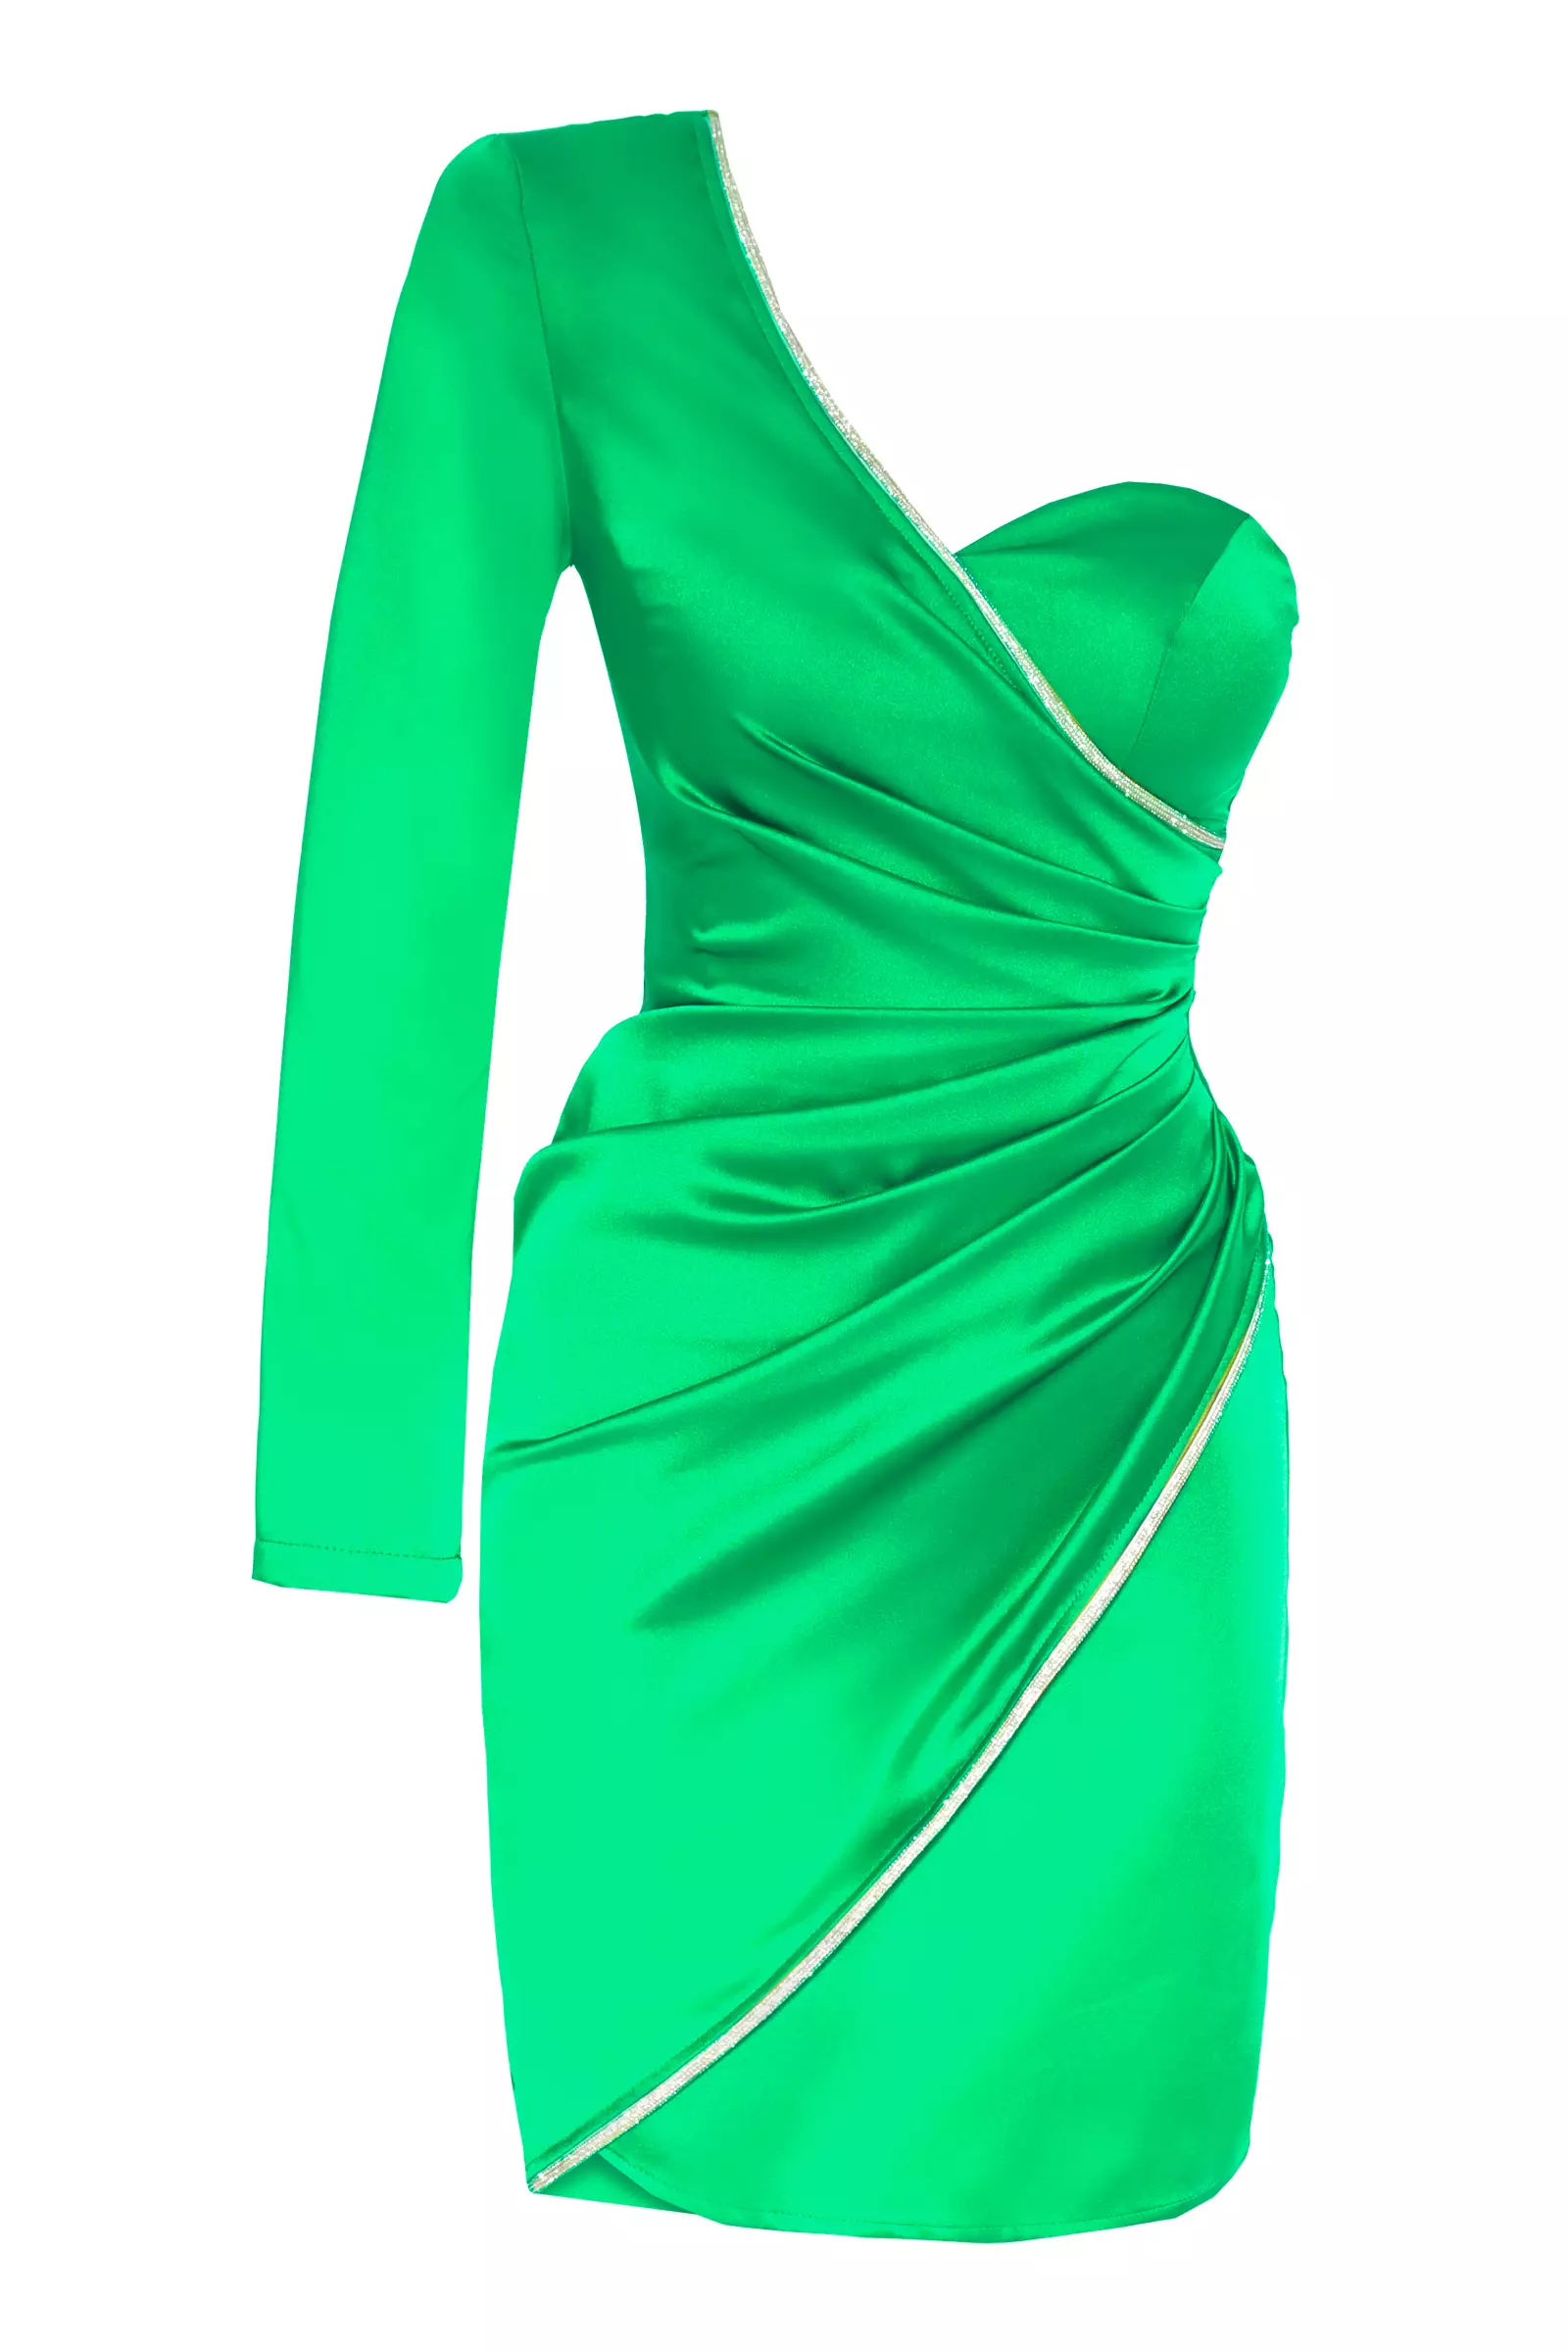 Green satin one arm mini dress